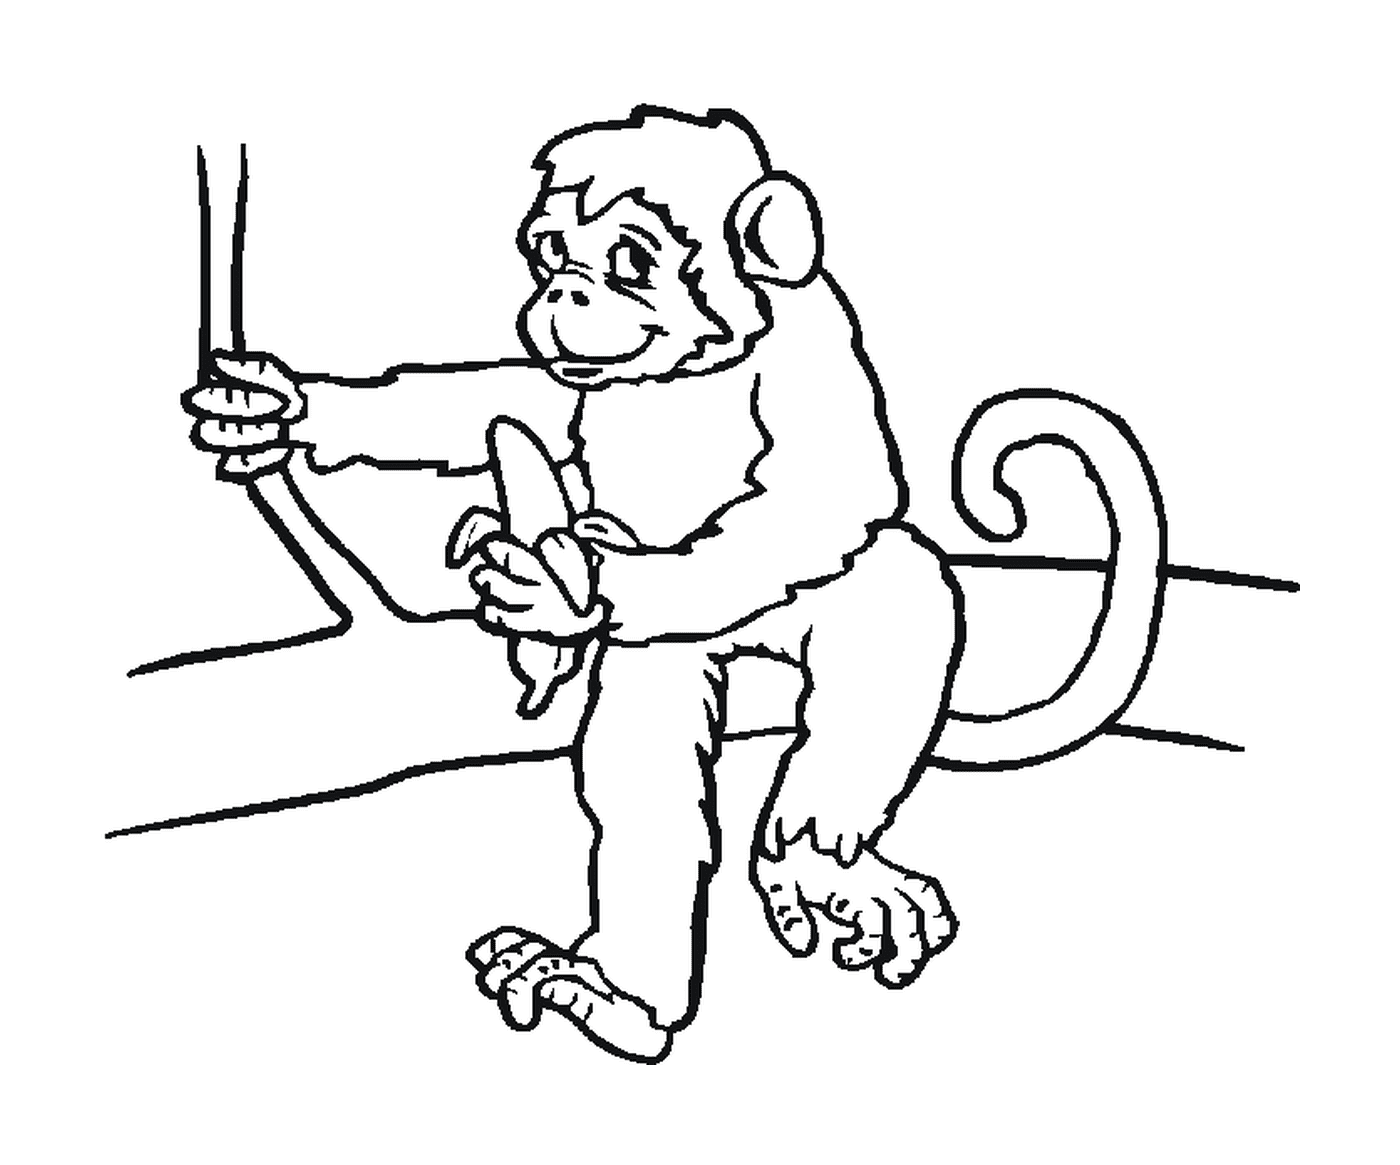  Affen sitzen mit einer Banane 